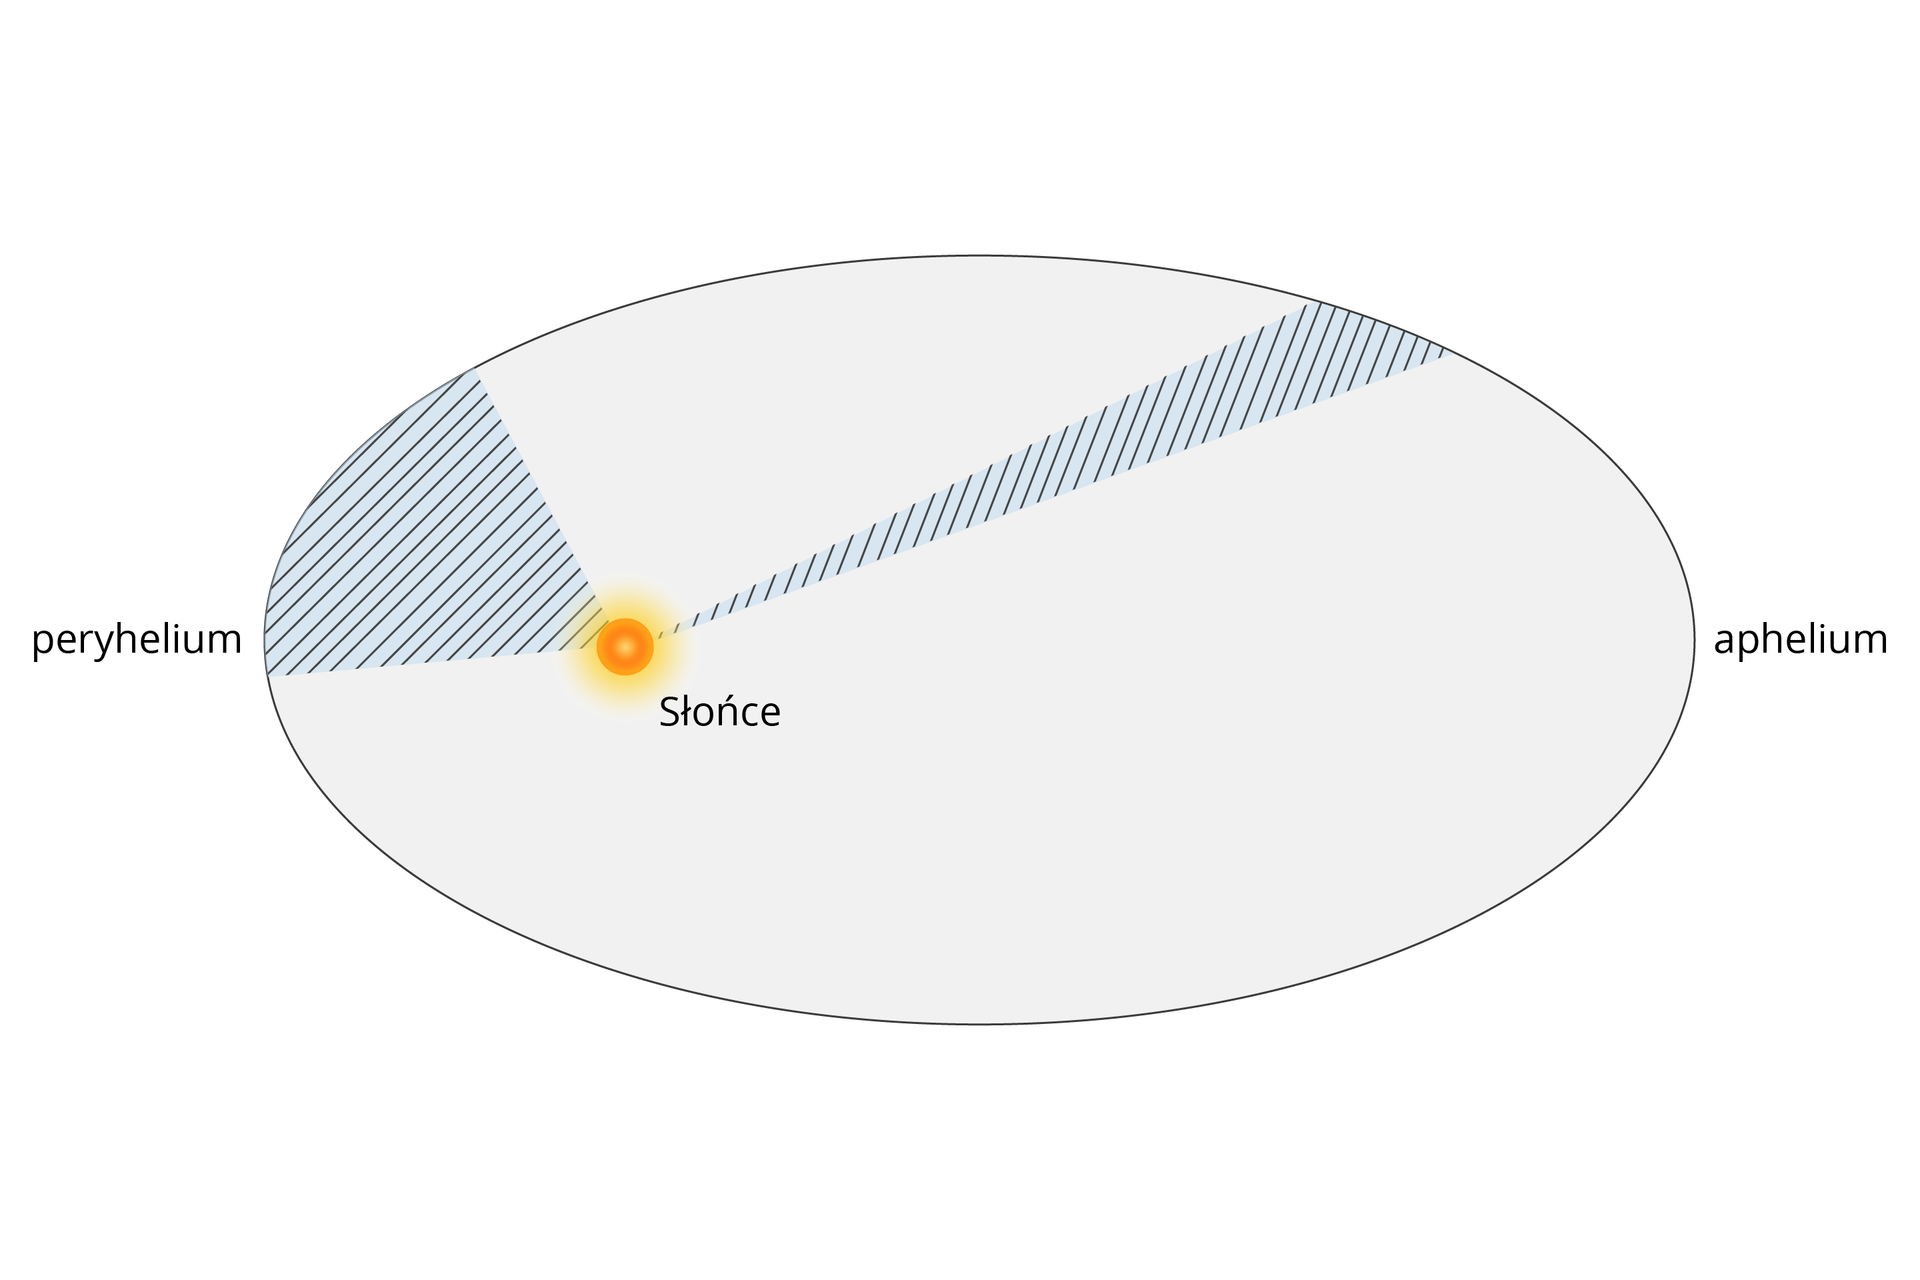 Ilustracja przedstawia II prawo Keplera. Tło białe. Po środku duża elipsa. Wnętrze elipsy jasnoszare. Na półosi wielkiej, po lewej stronie, znajduje się żółty punkt – „Słońce”. Wycinek elipsy, od żółtego punktu do dwóch punktów położonych na lewej części elipsy, zacieniono i zakreślono. Kąt pomiędzy dwoma odcinkami biegnącymi do Słońca jest nieco mniejszy niż 90 stopni. Po lewej stronie elipsy napisano „peryhelium”. Po prawej stronie elipsy napisano „aphelium”. Drugi wycinek elipsy, od żółtego punktu do dwóch punktów, położonych bisko siebie w prawej górnej części elipsy został zacieniony i zakreślony tak samo, jak pierwszy. Odcinki są zdecydowanie dłuższe. Kąt pomiędzy nimi jest bardzo ostry.